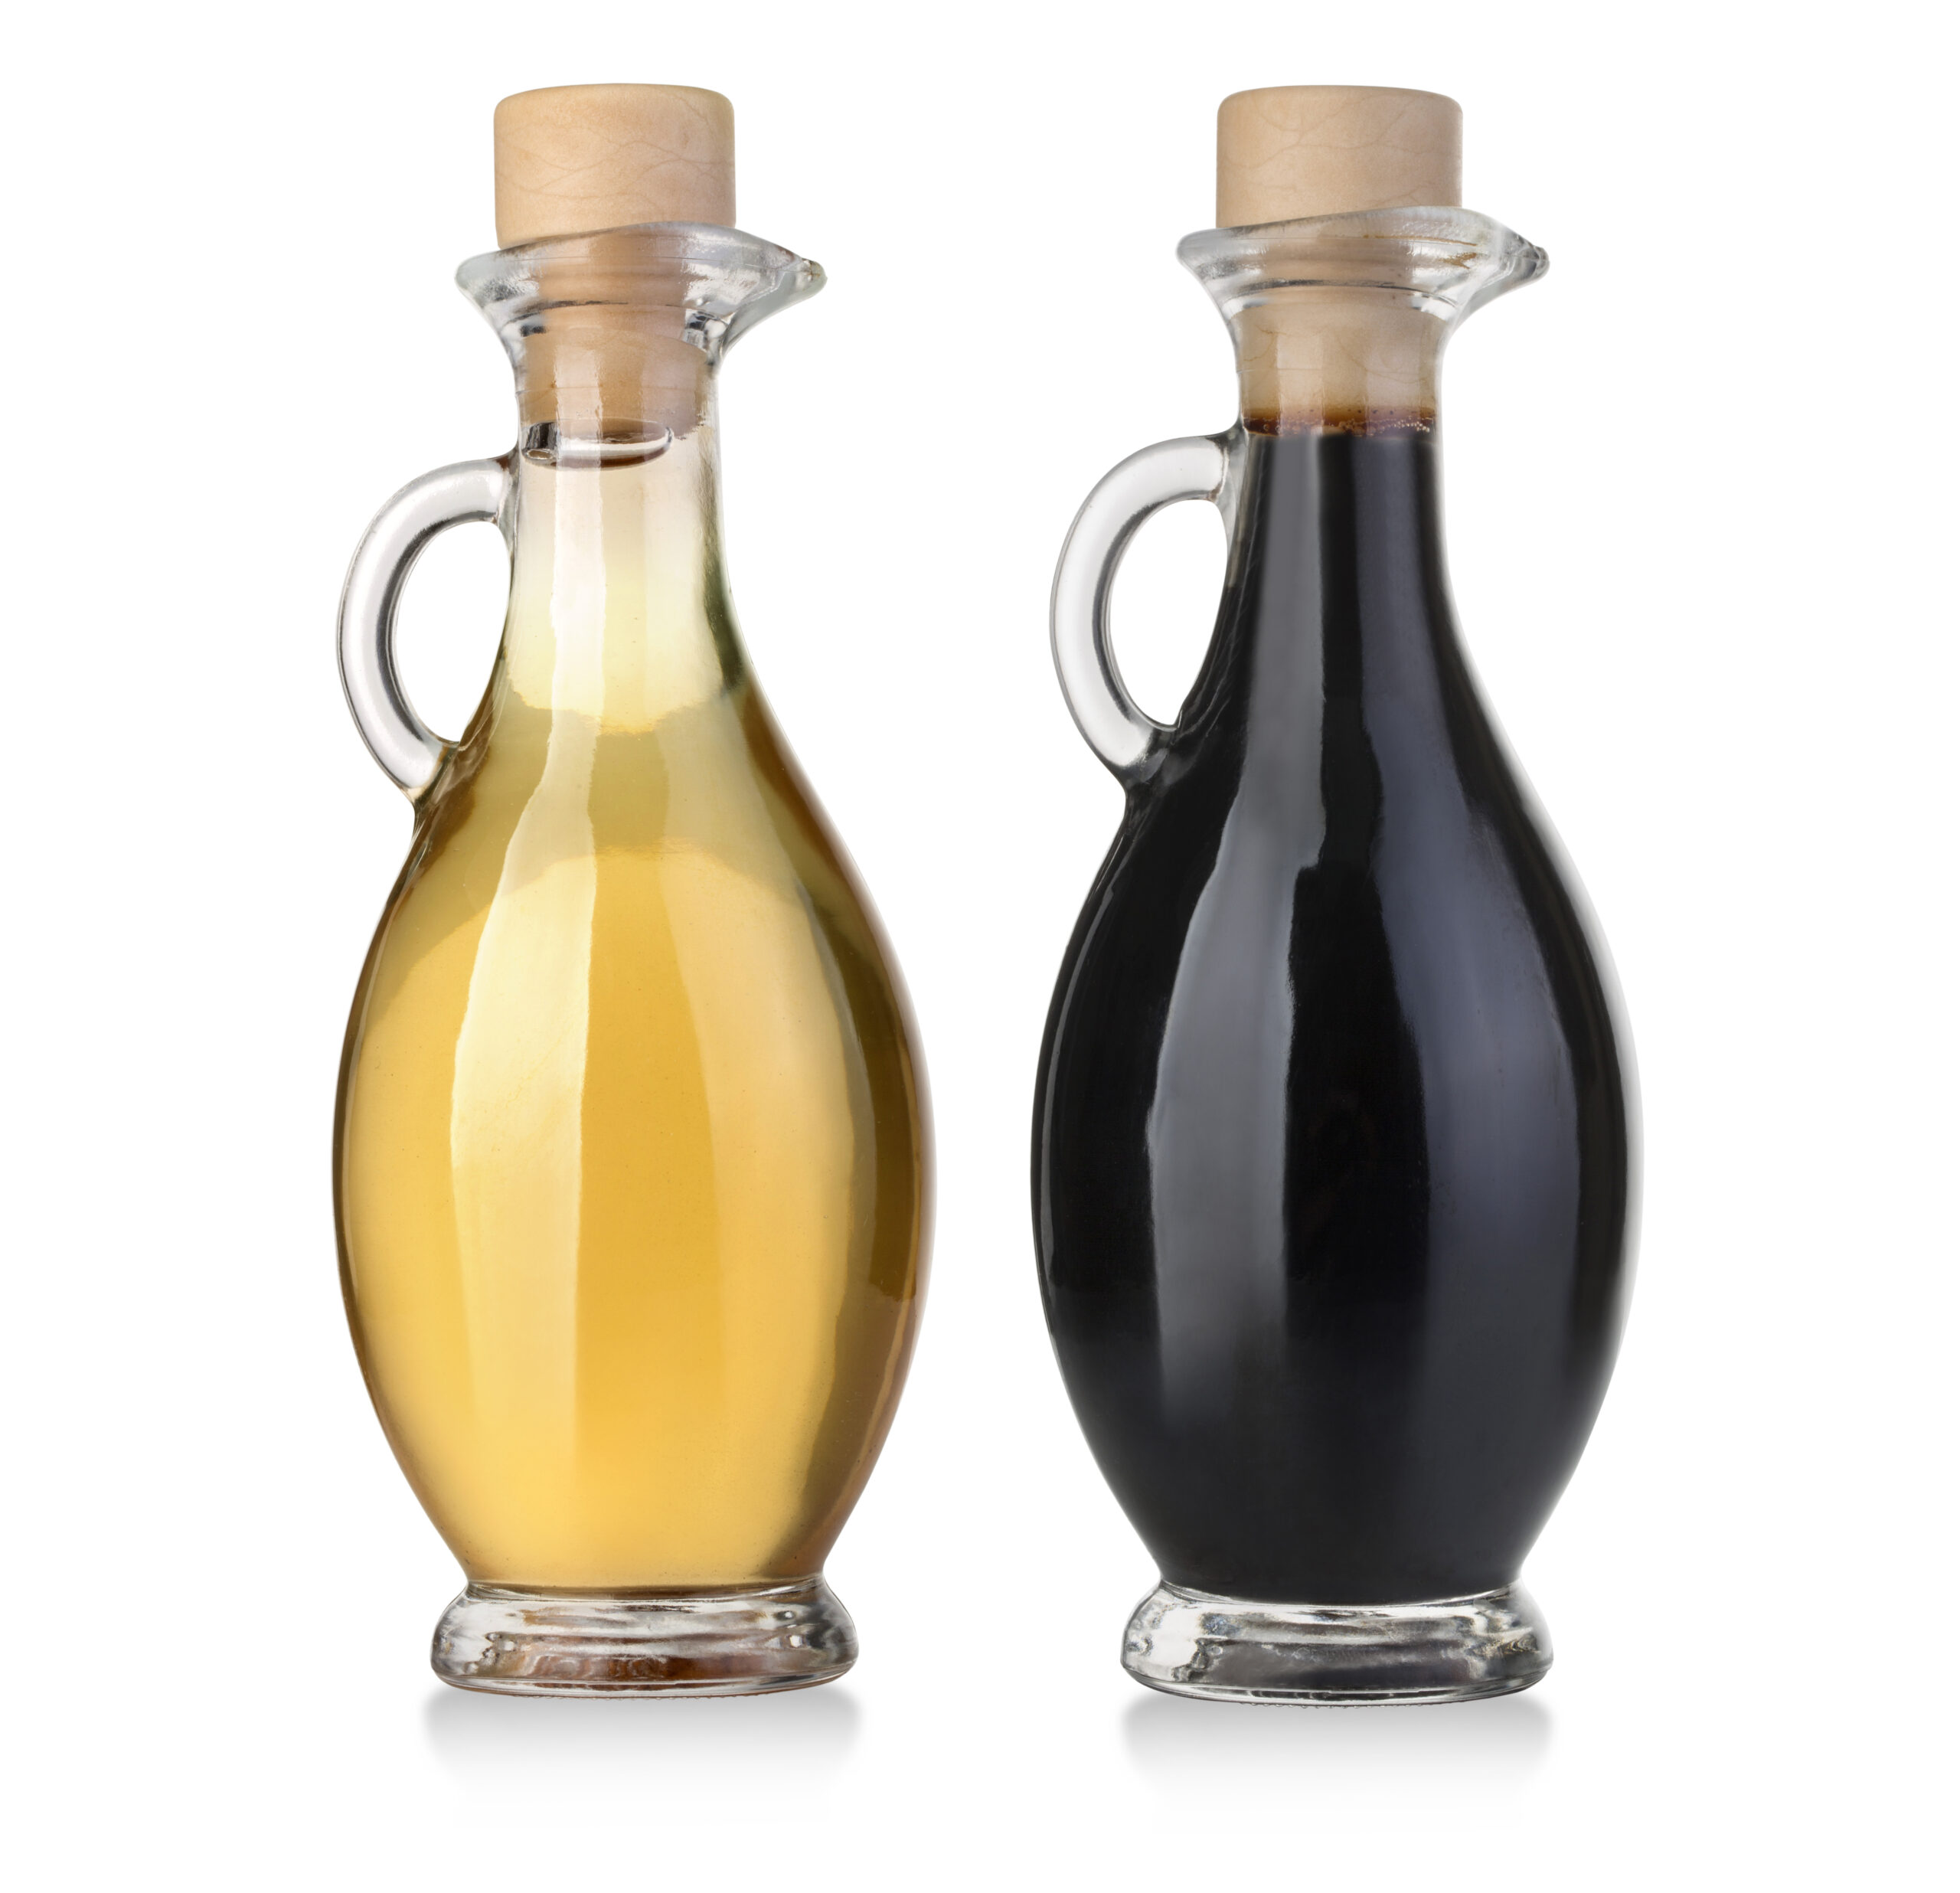 olive oil and balsamic vinegar in bottles